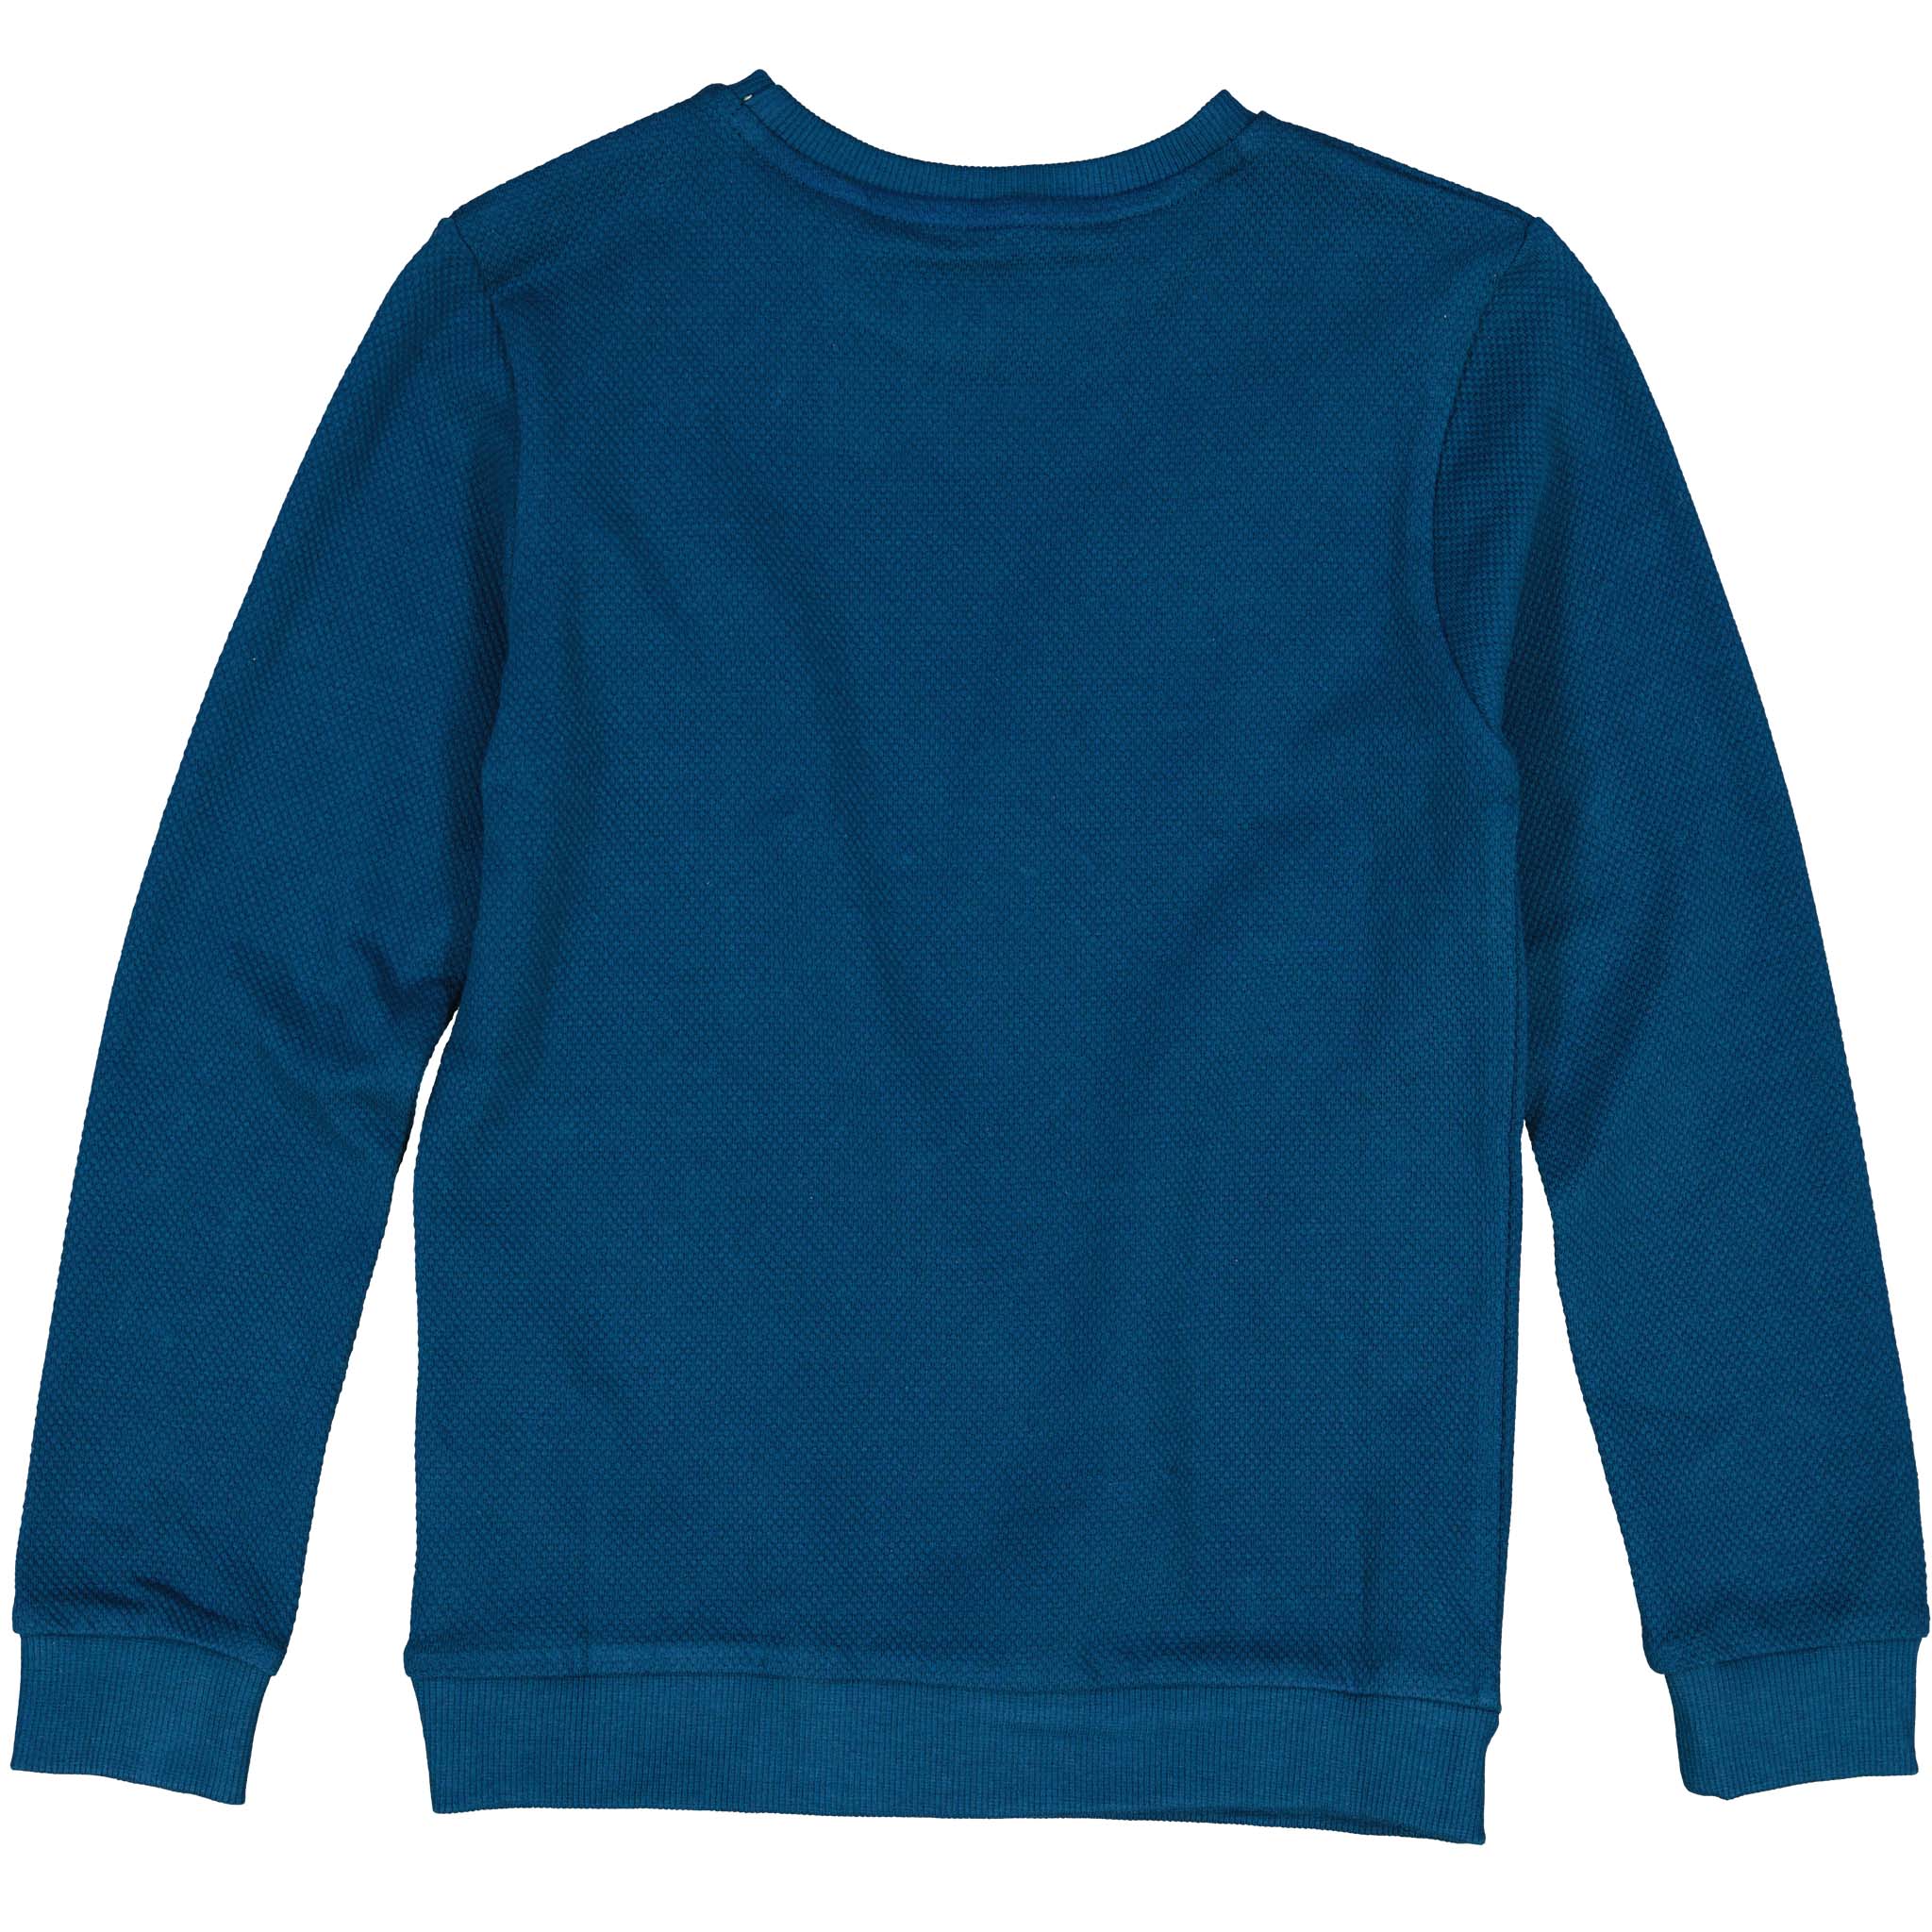 Jongens Sweater REV W211 van LEVV in de kleur Blue Sea in maat 176.